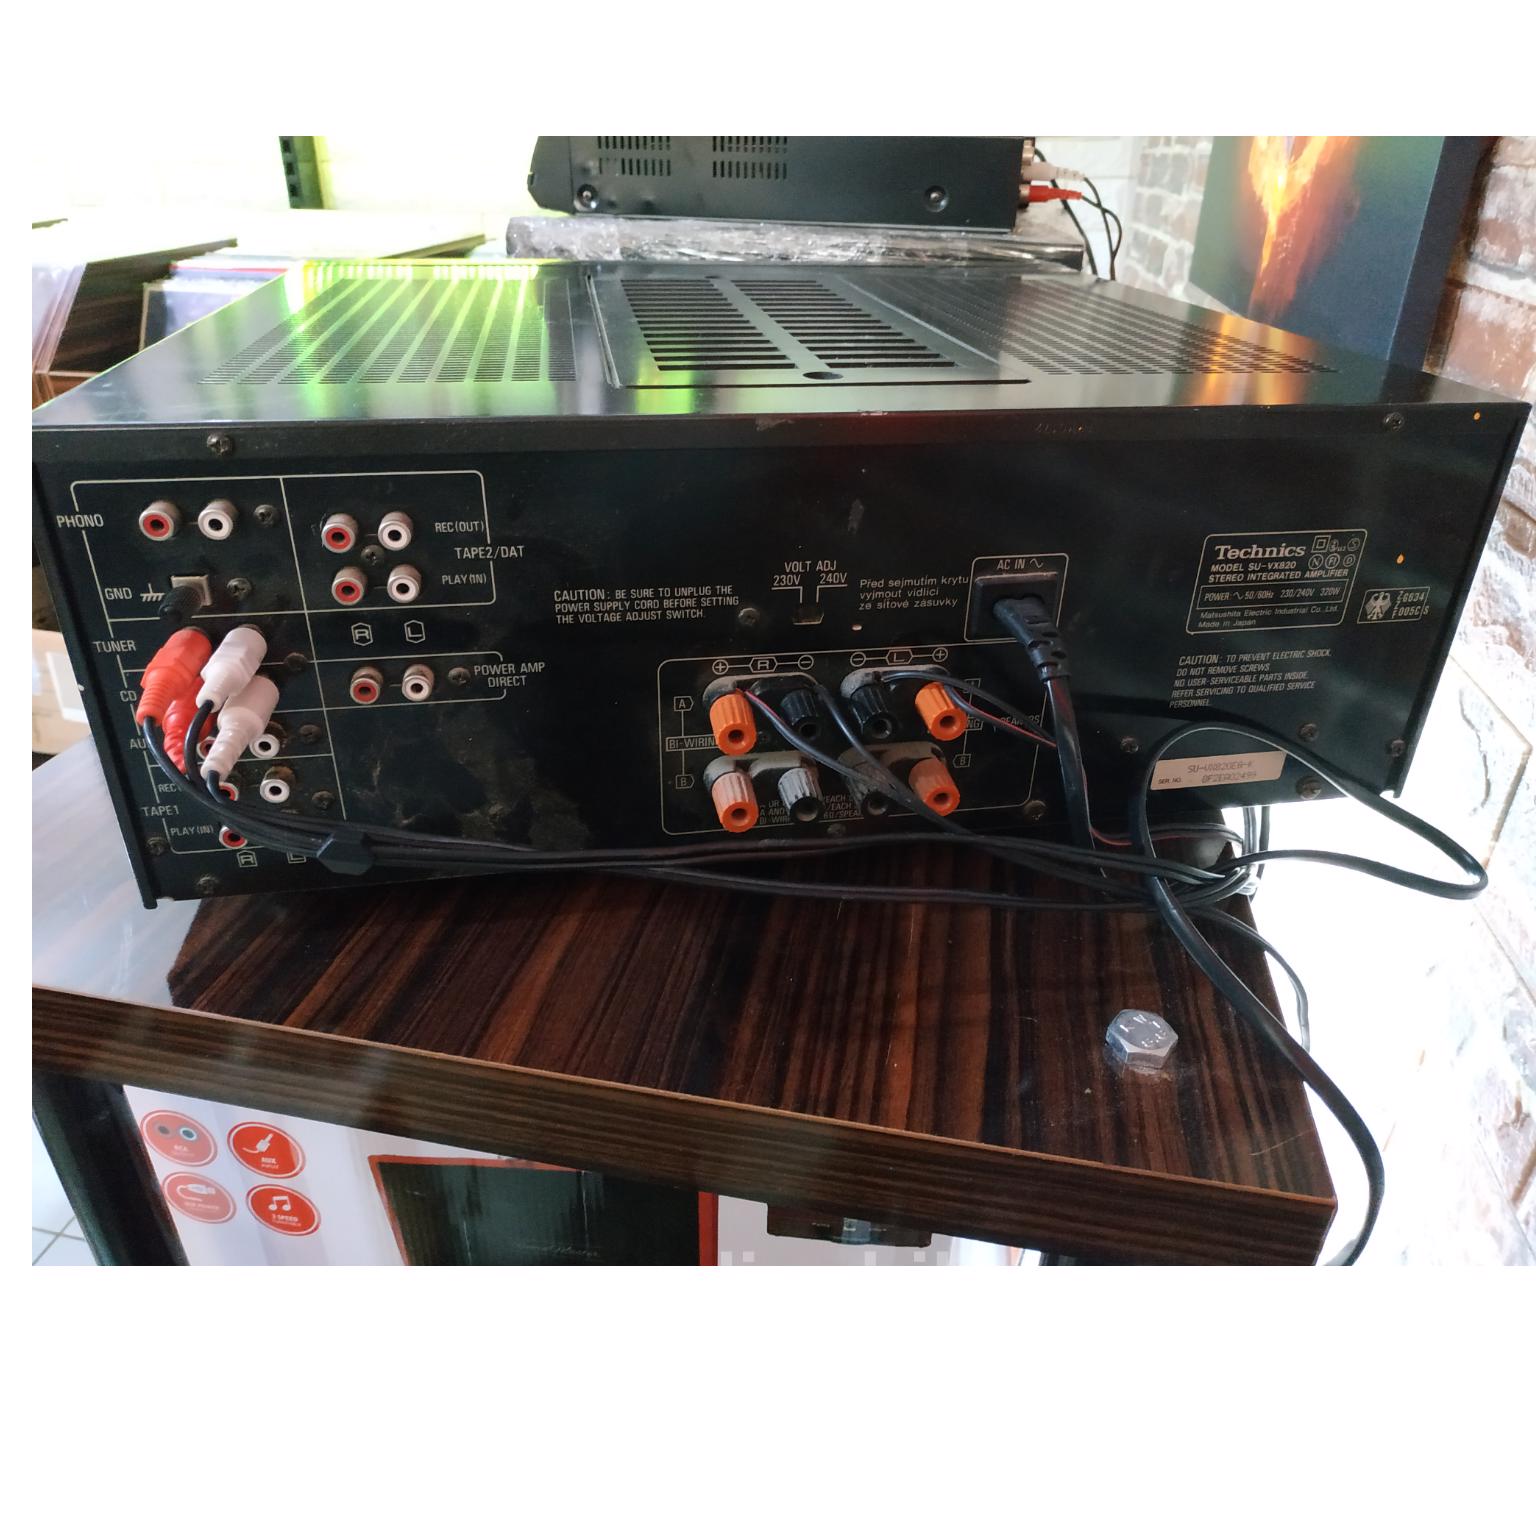 Technıcs su-vx820 stereo entegre ampli